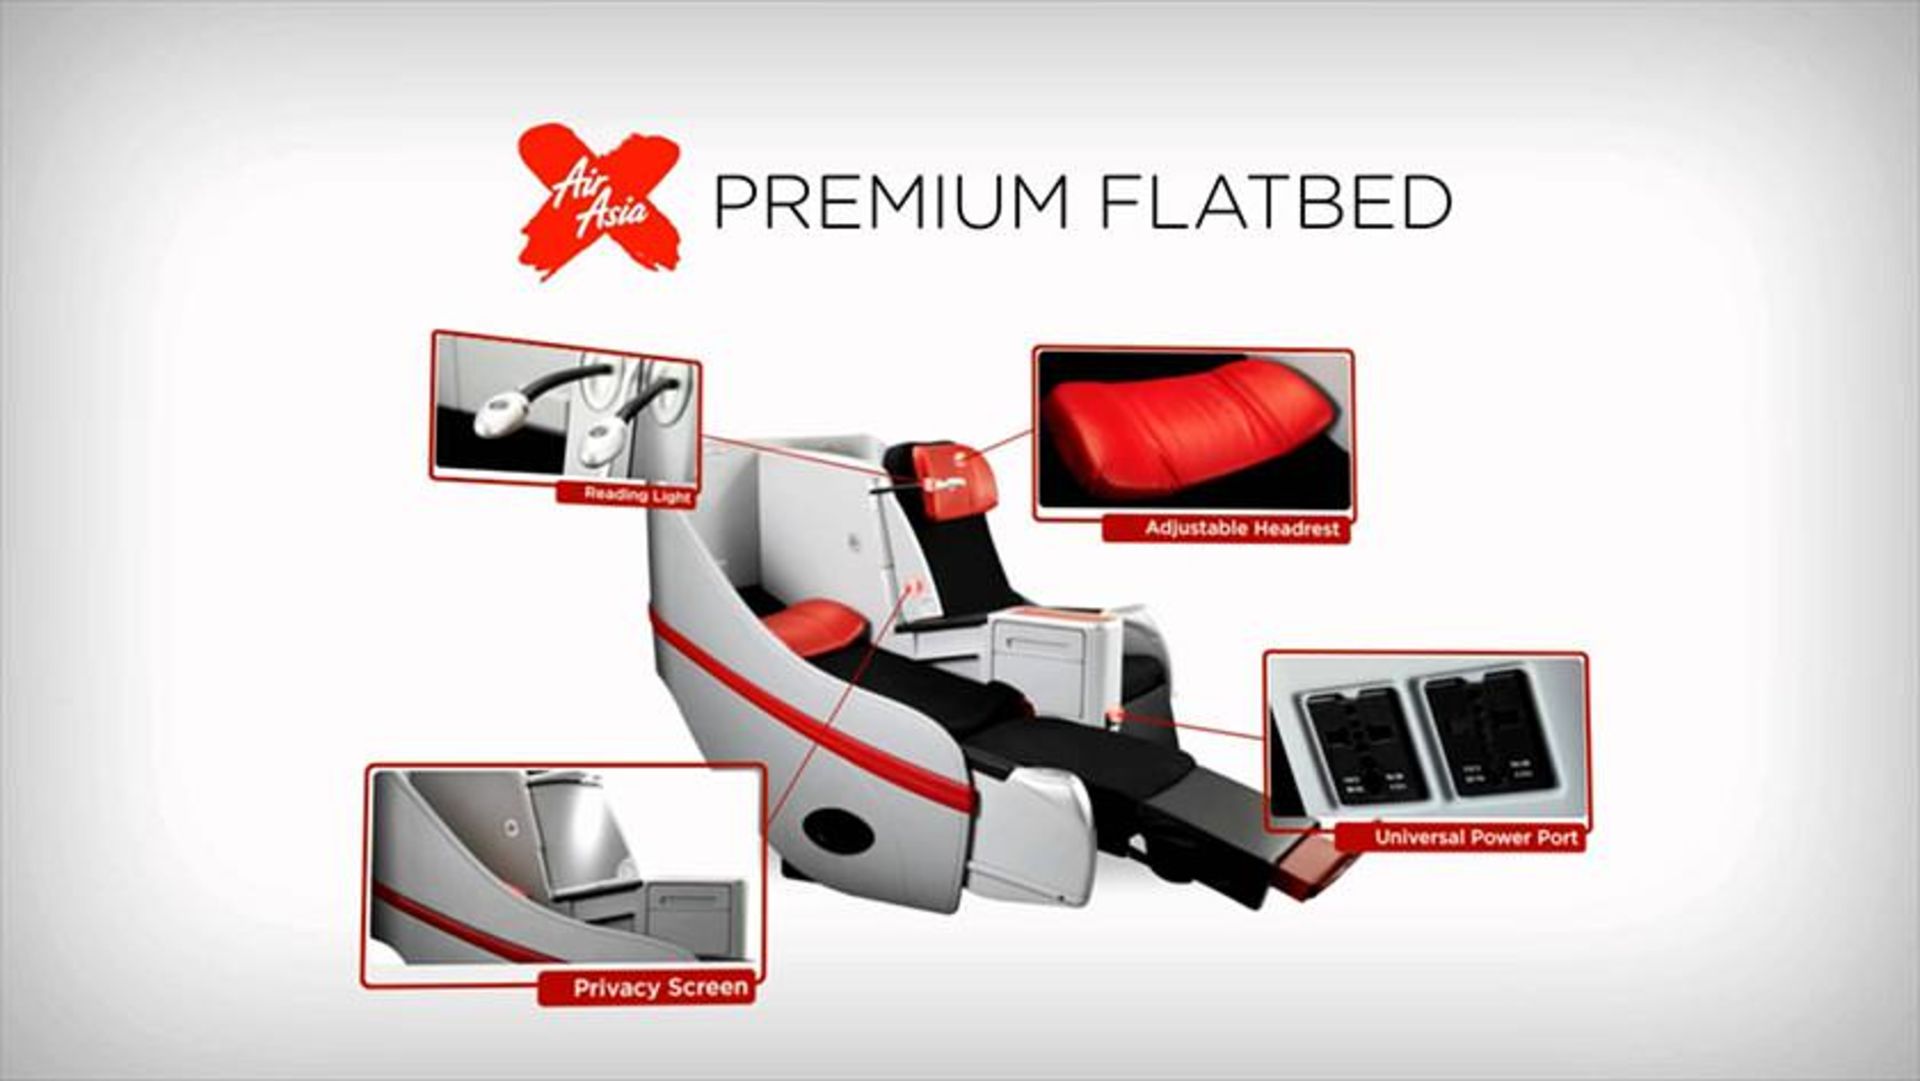 Premium Flatbed